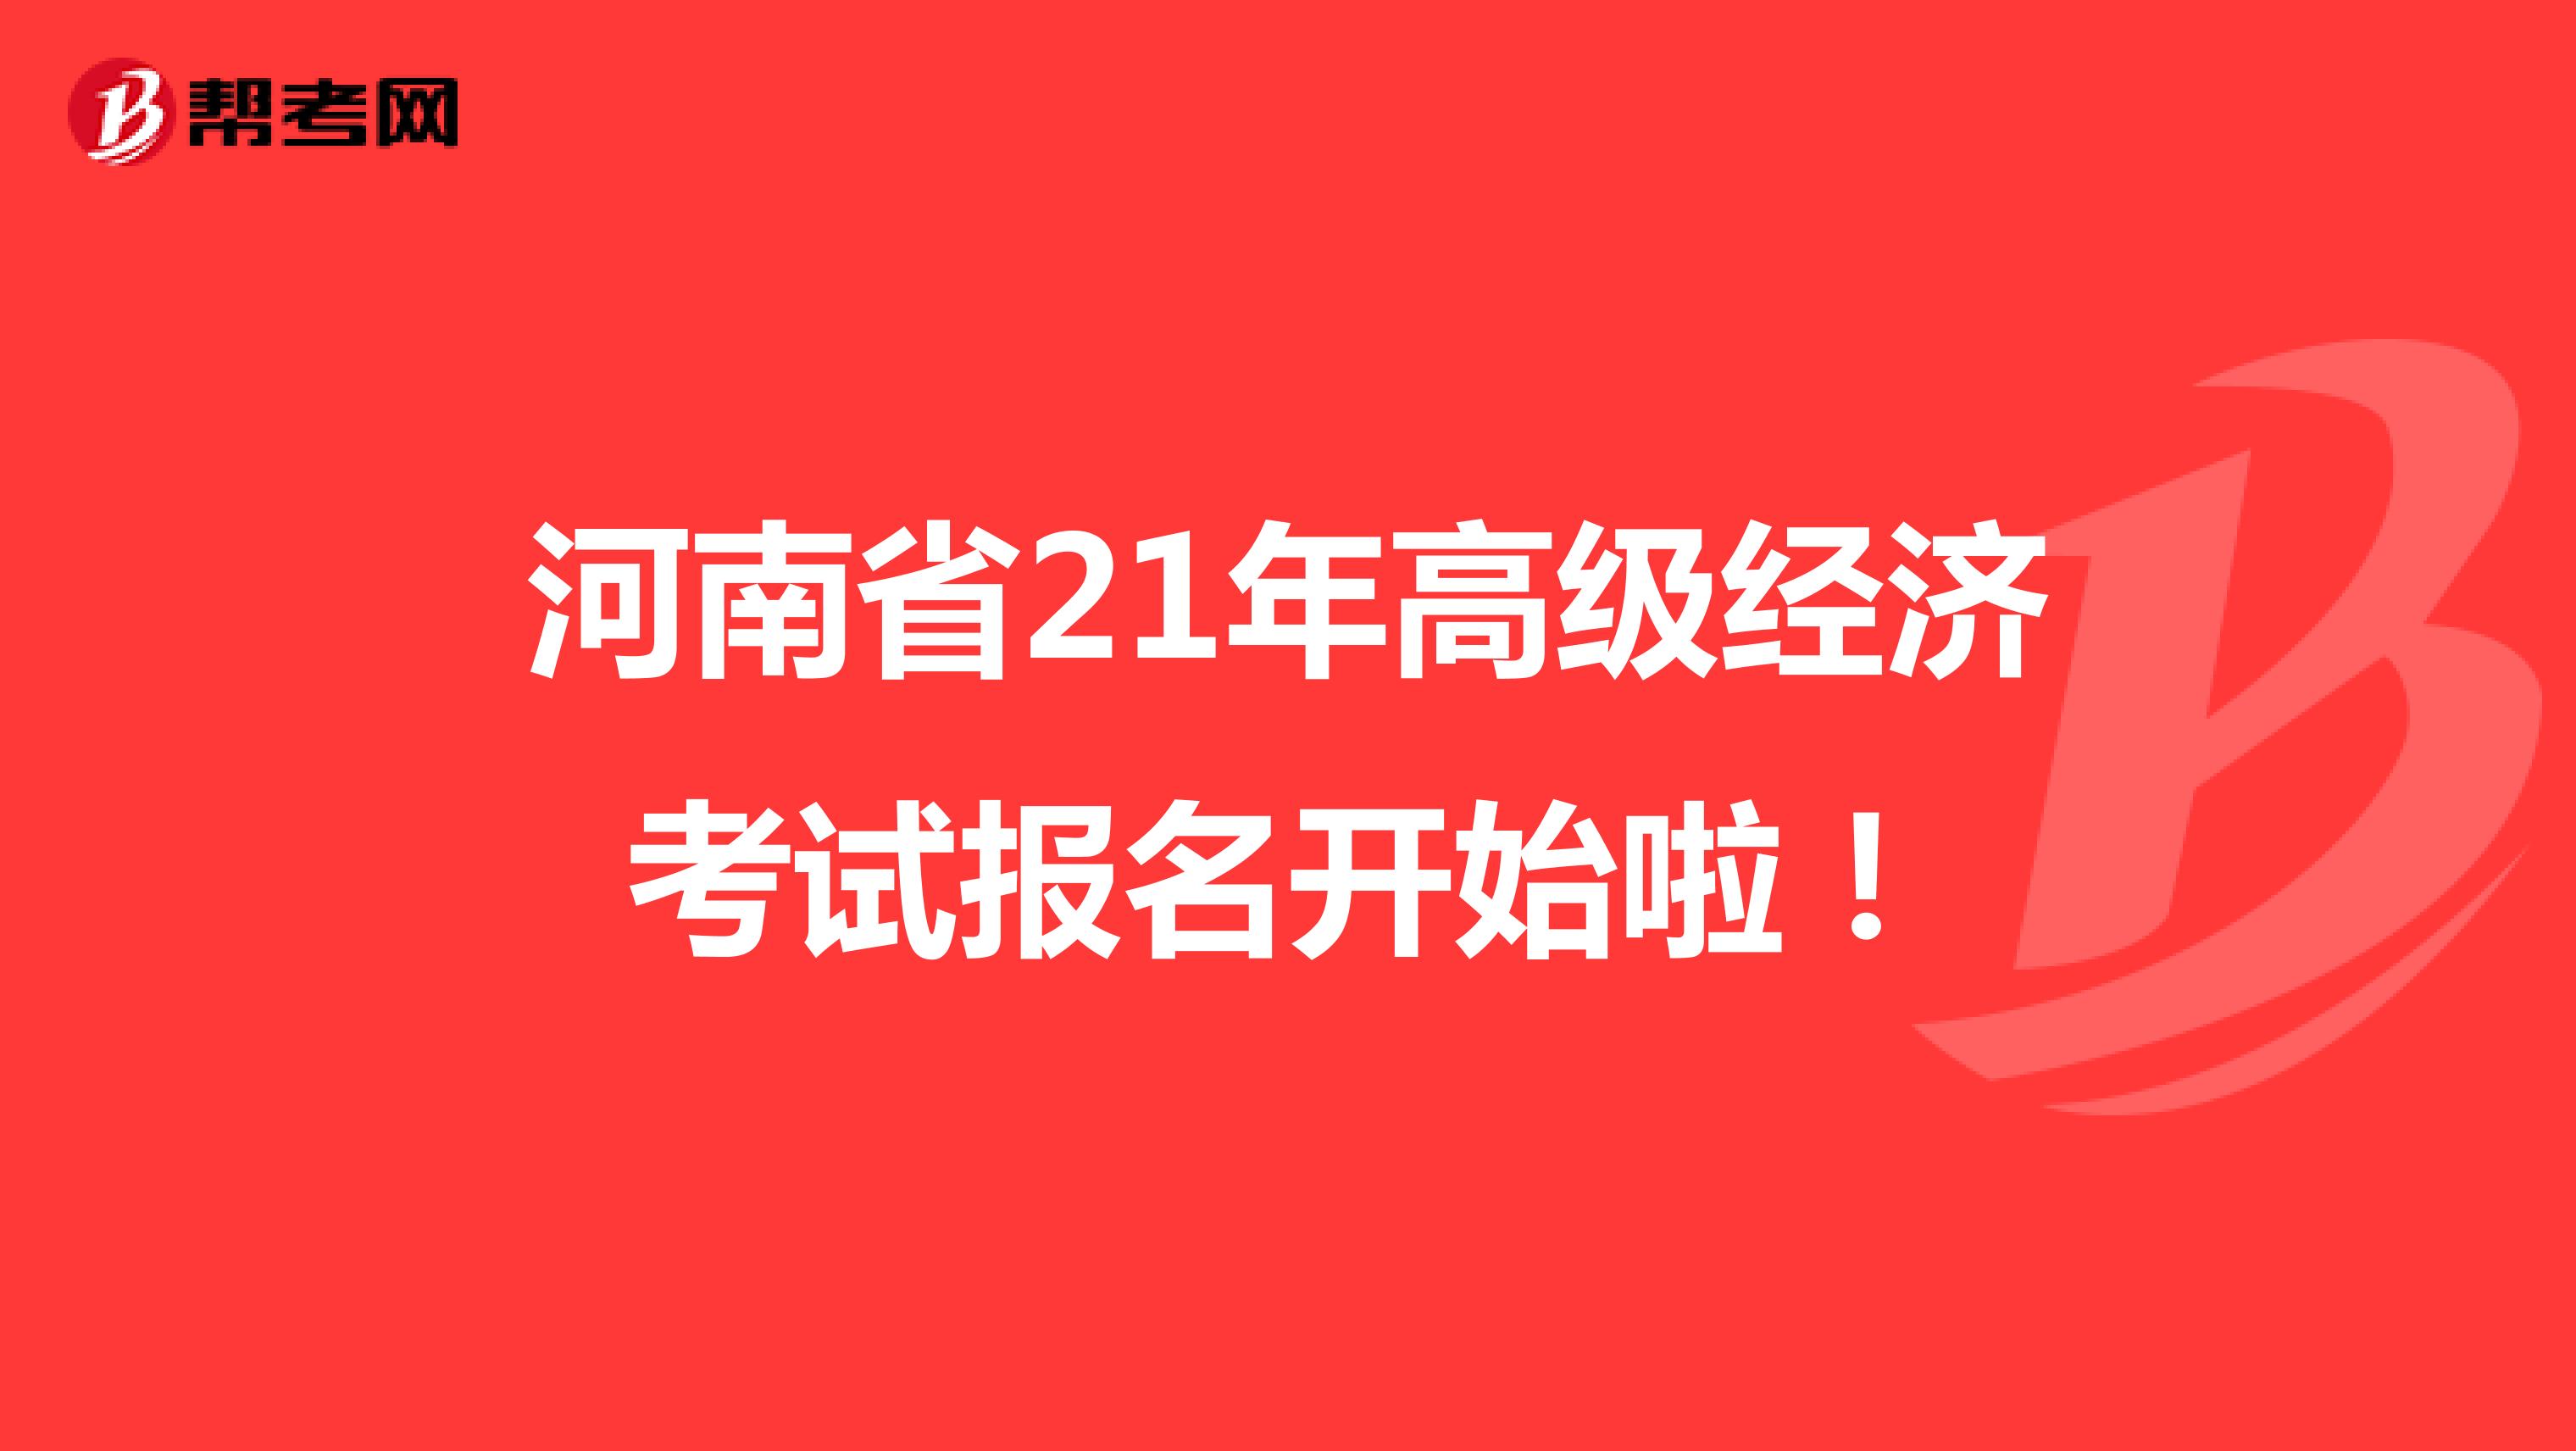 河南省21年高级经济考试报名开始啦！